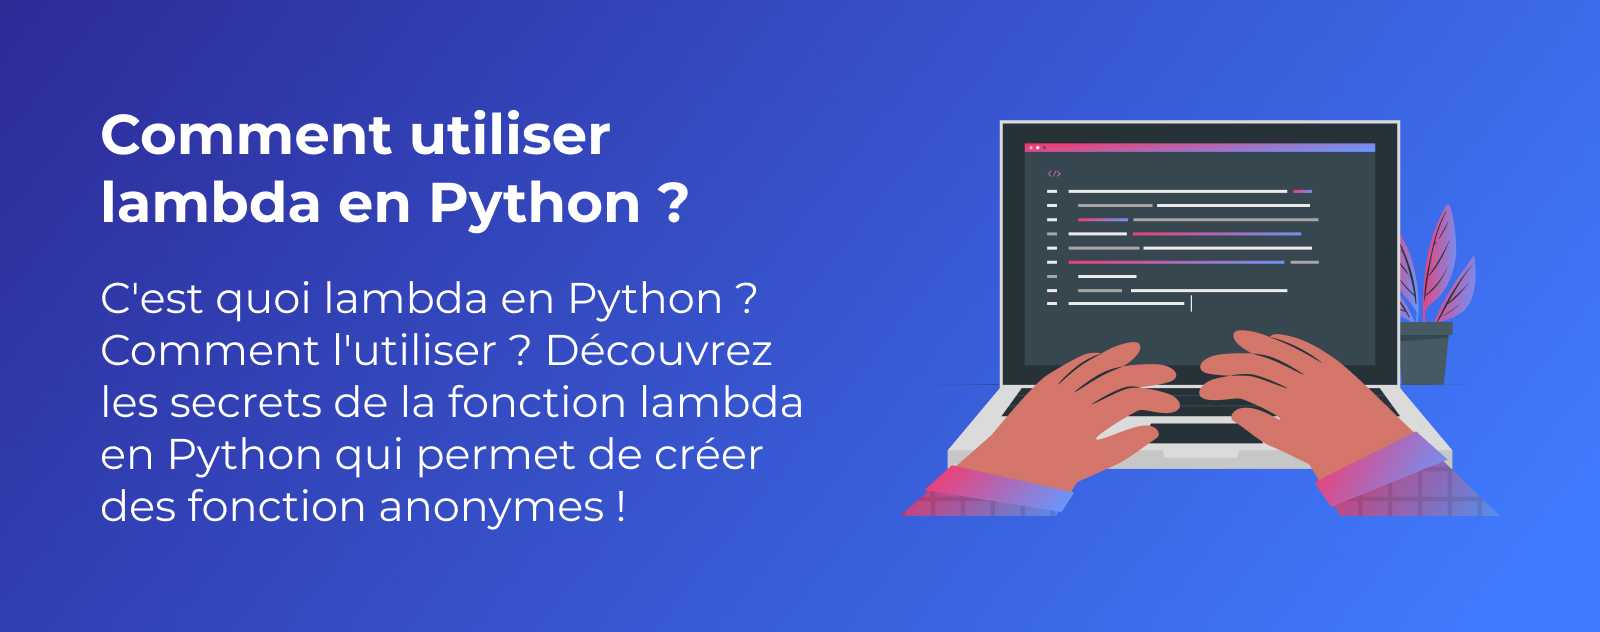 La fonction lambda en Python